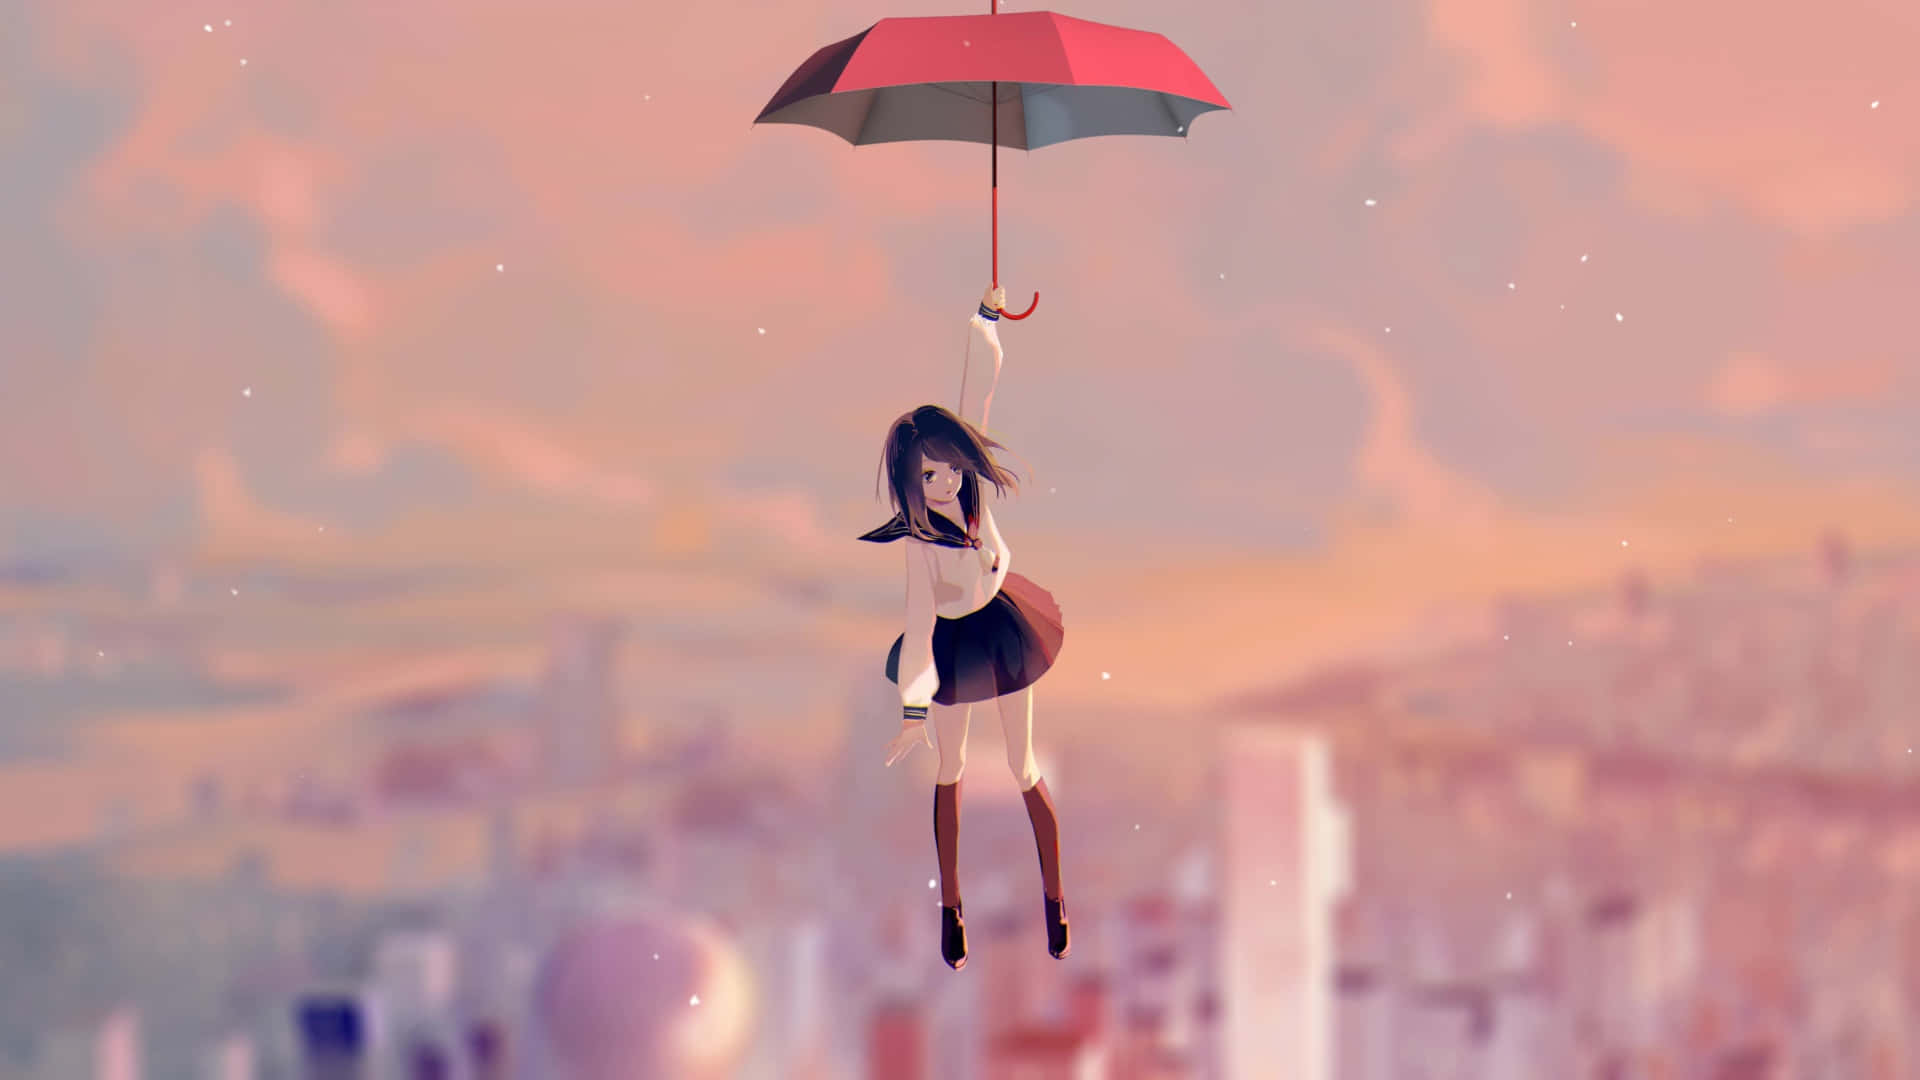 Fantasy Umbrella Flight.jpg